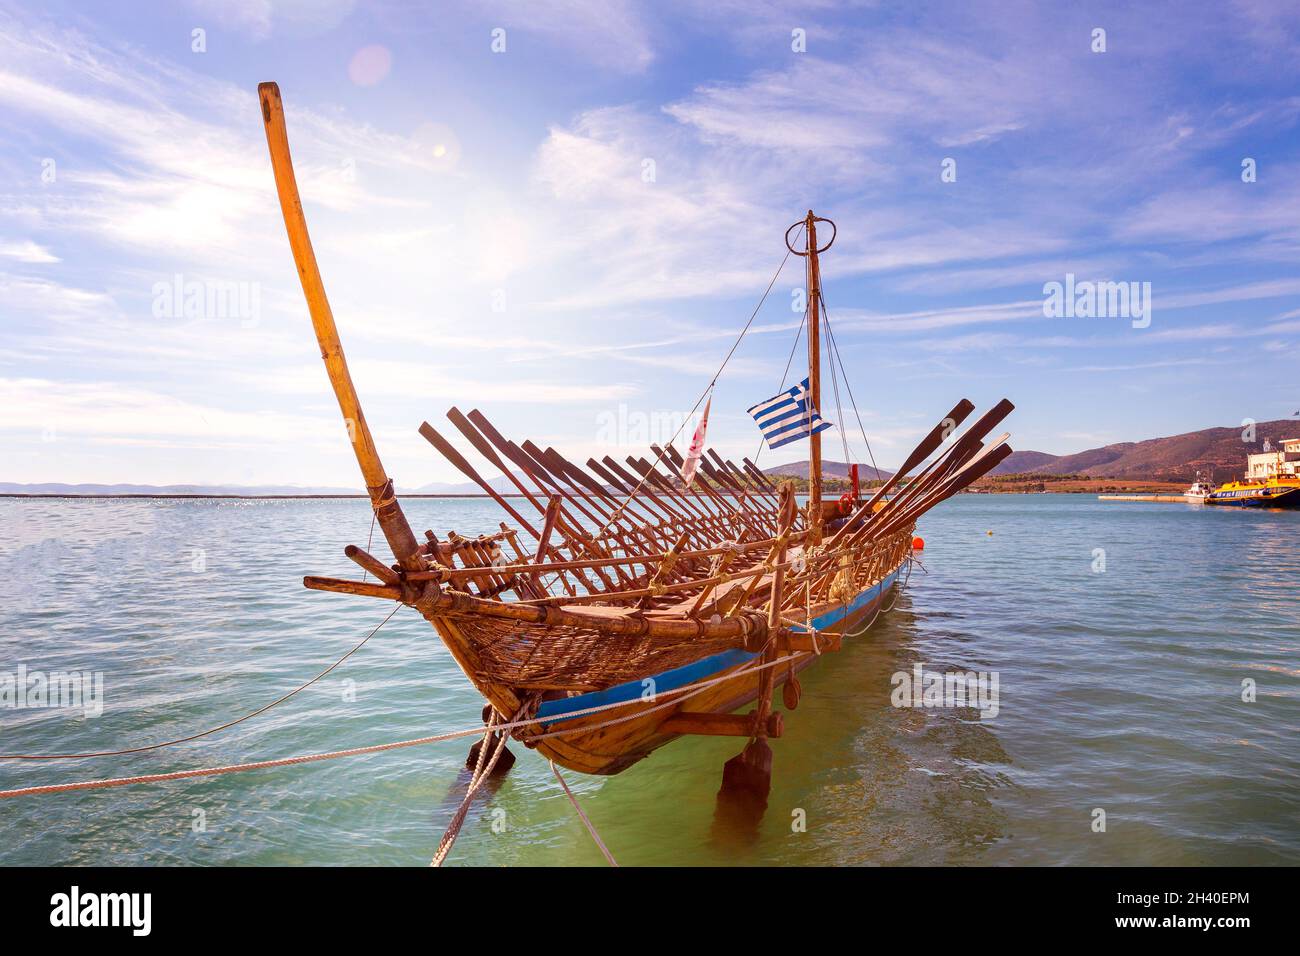 Replica of Argo mythical ship in Volos, Greece Stock Photo